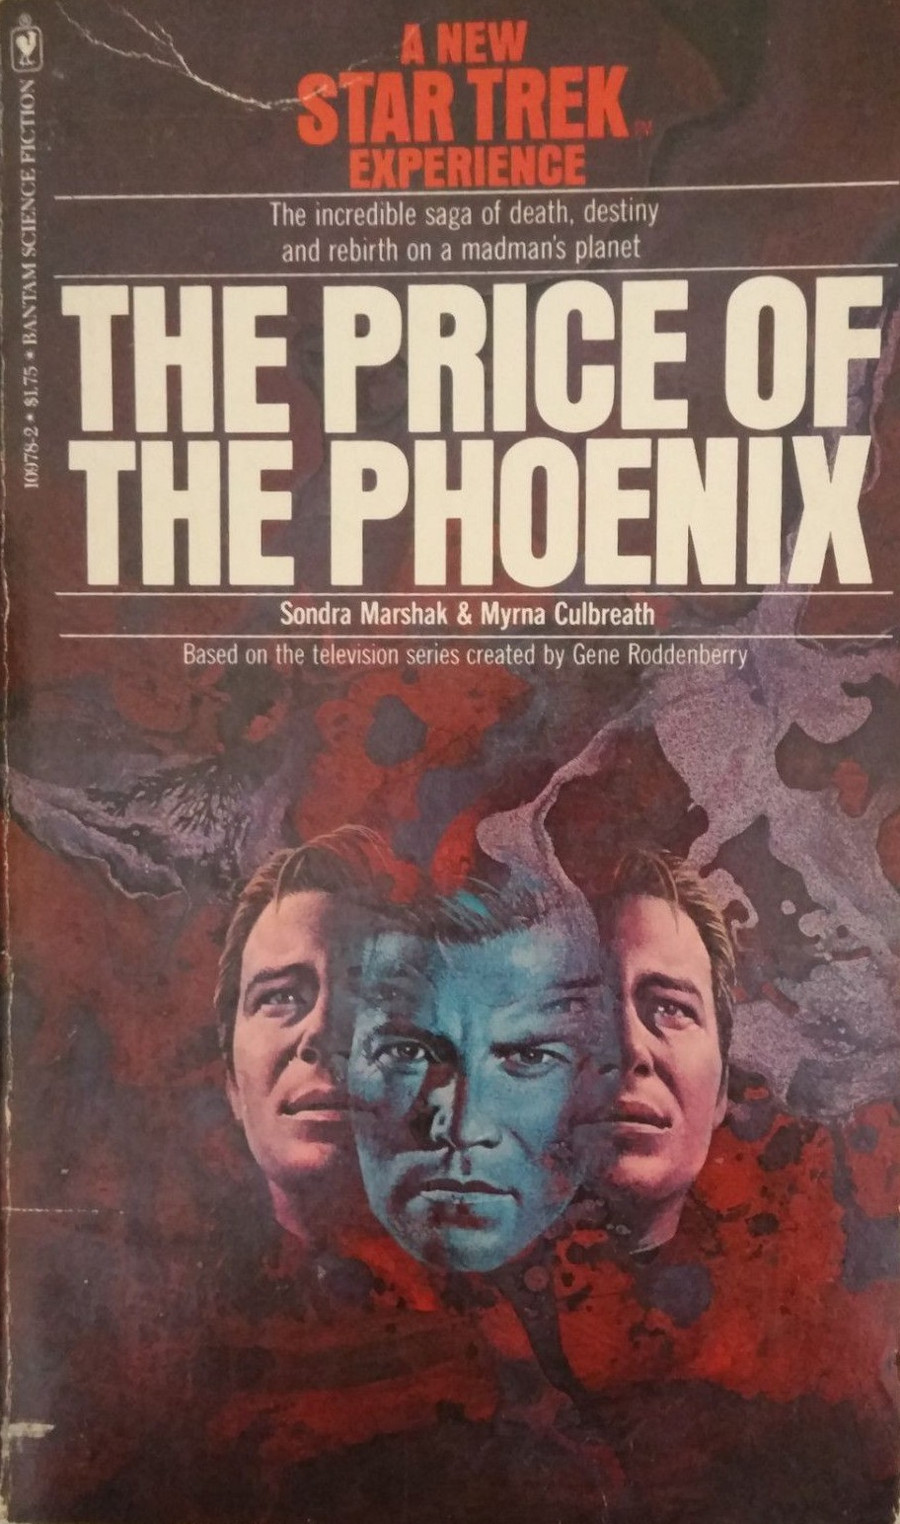 "The Price of the Phoenix"